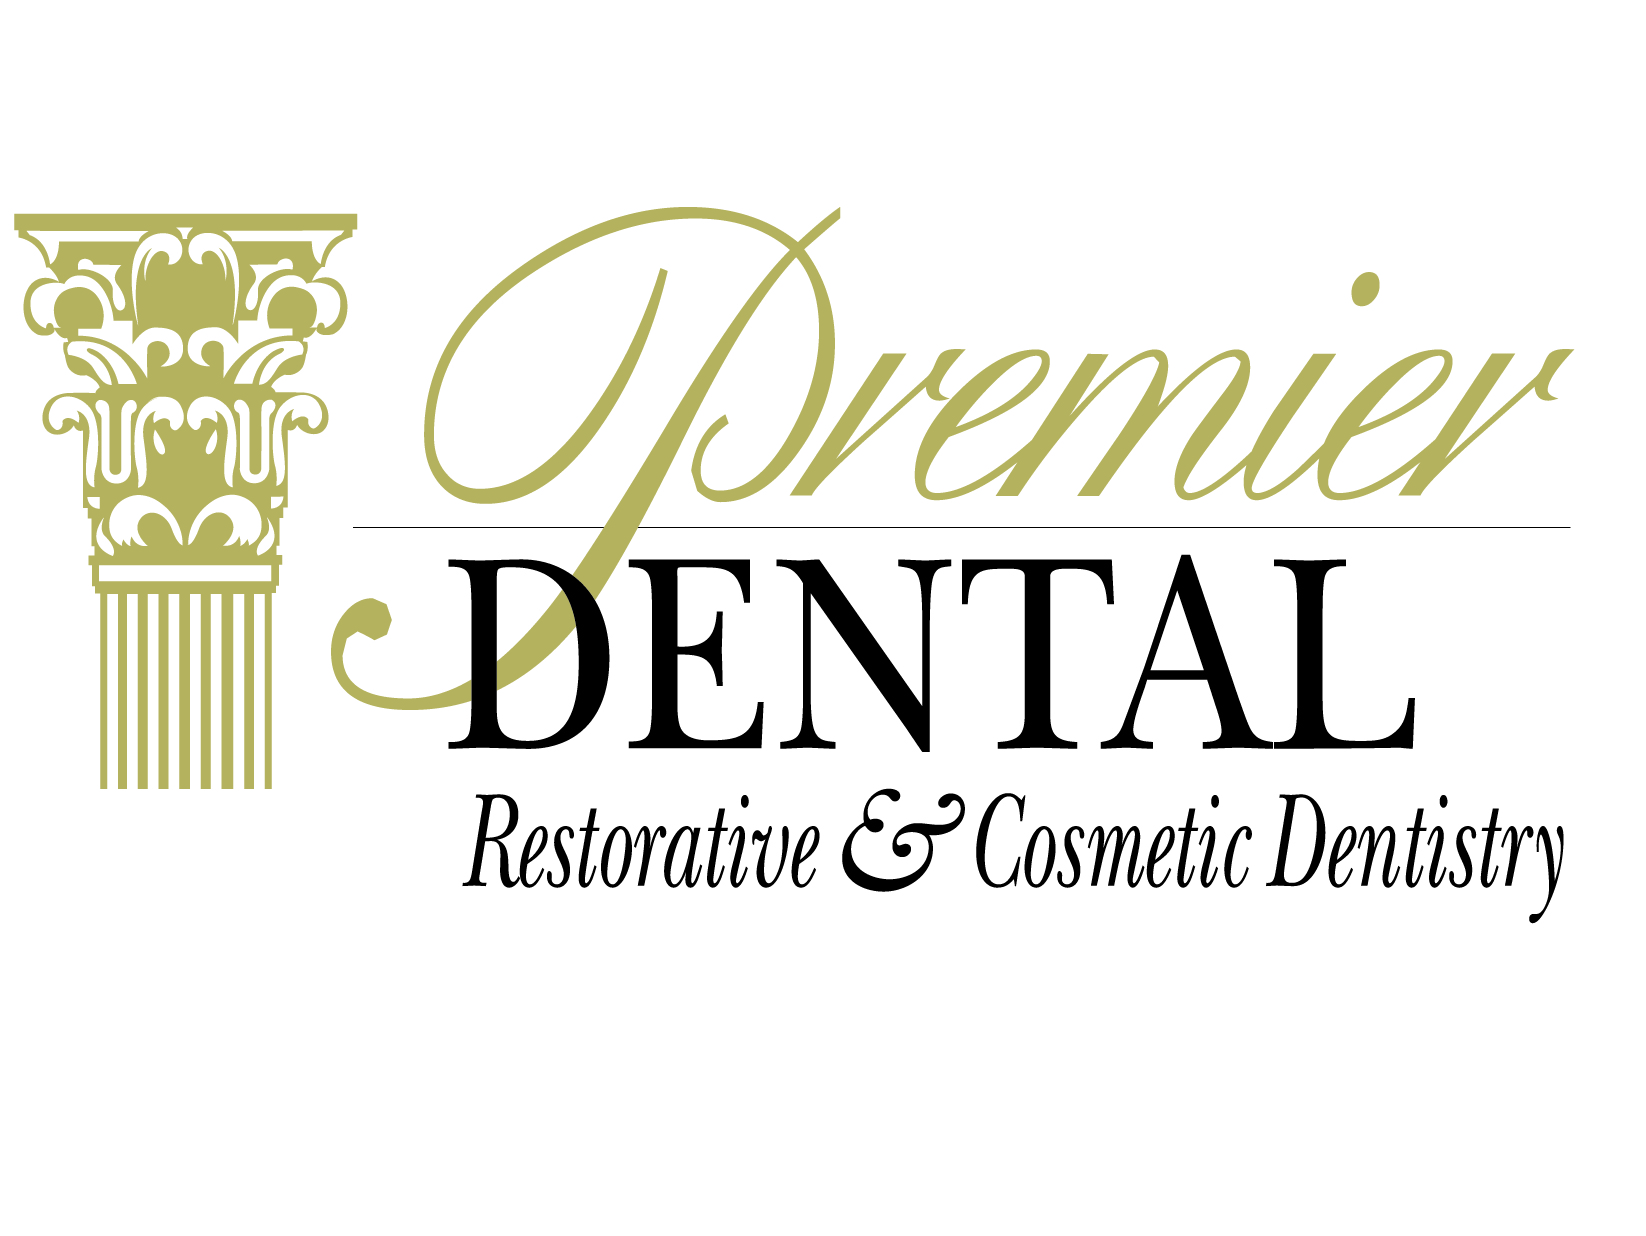 Omaha Dental Office Premier Dental Holds Back to School Promotion